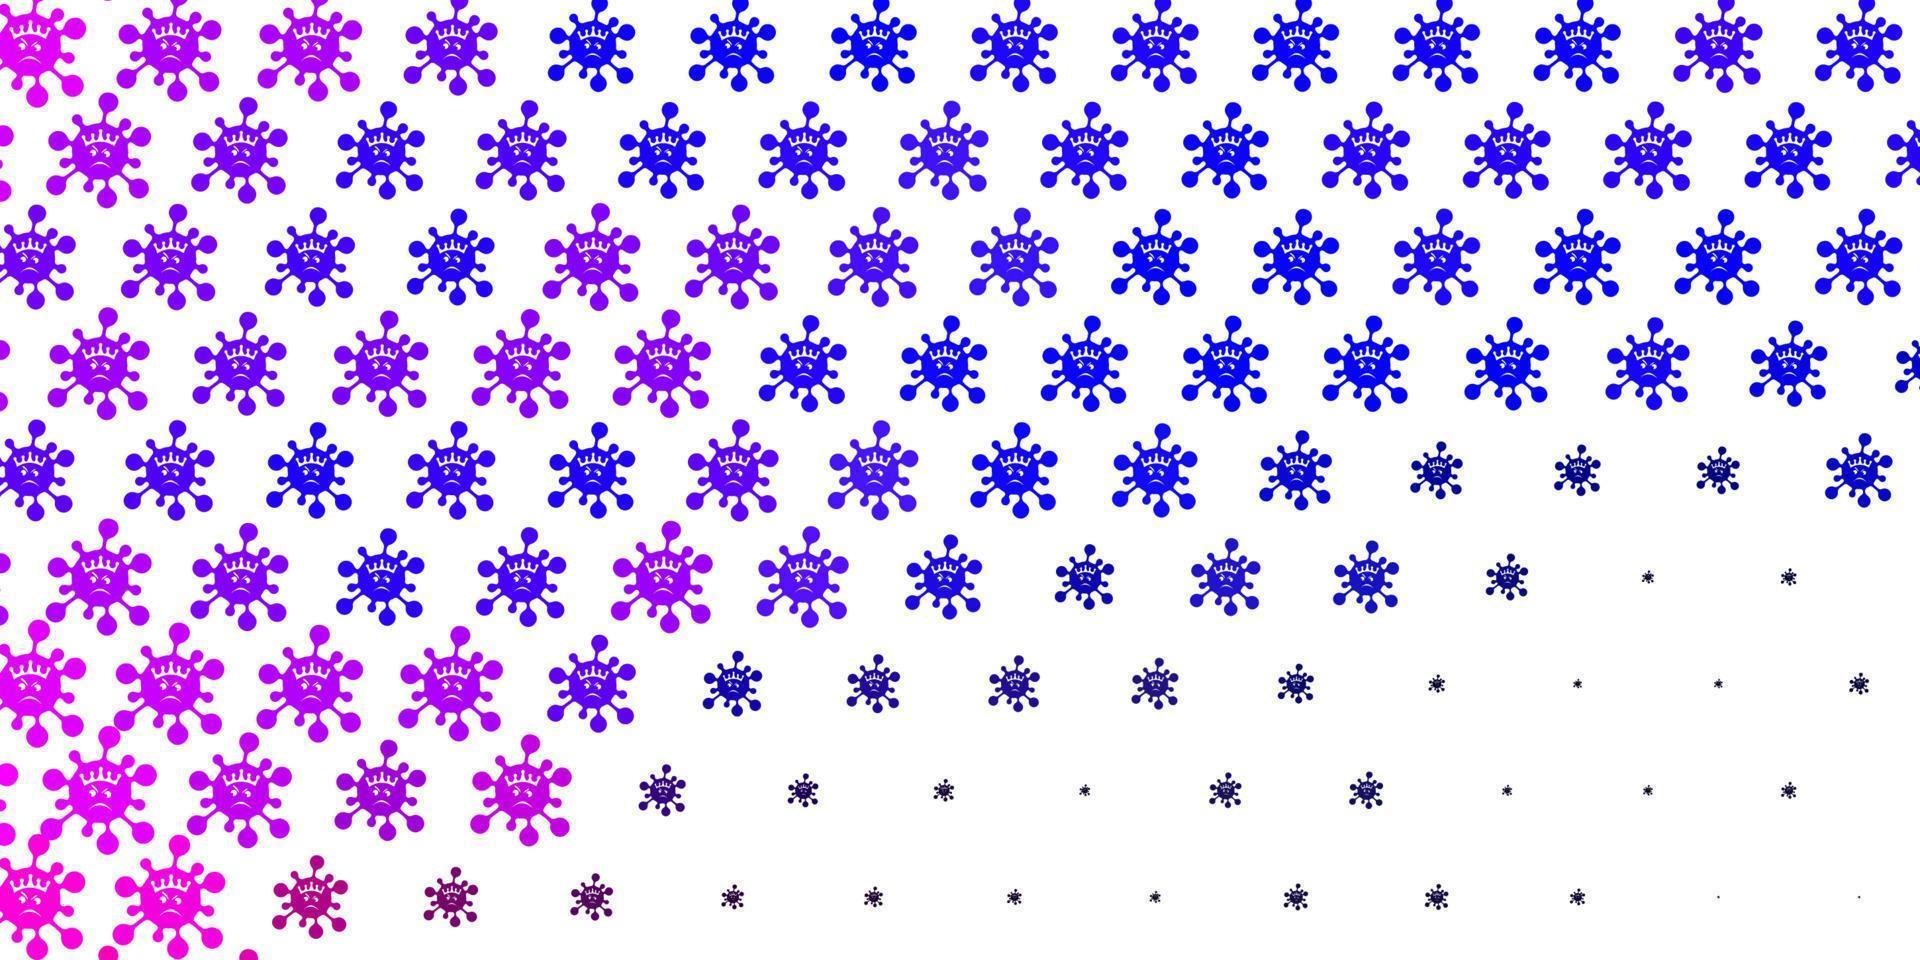 Fondo de vector rosa claro, azul con símbolos de virus.